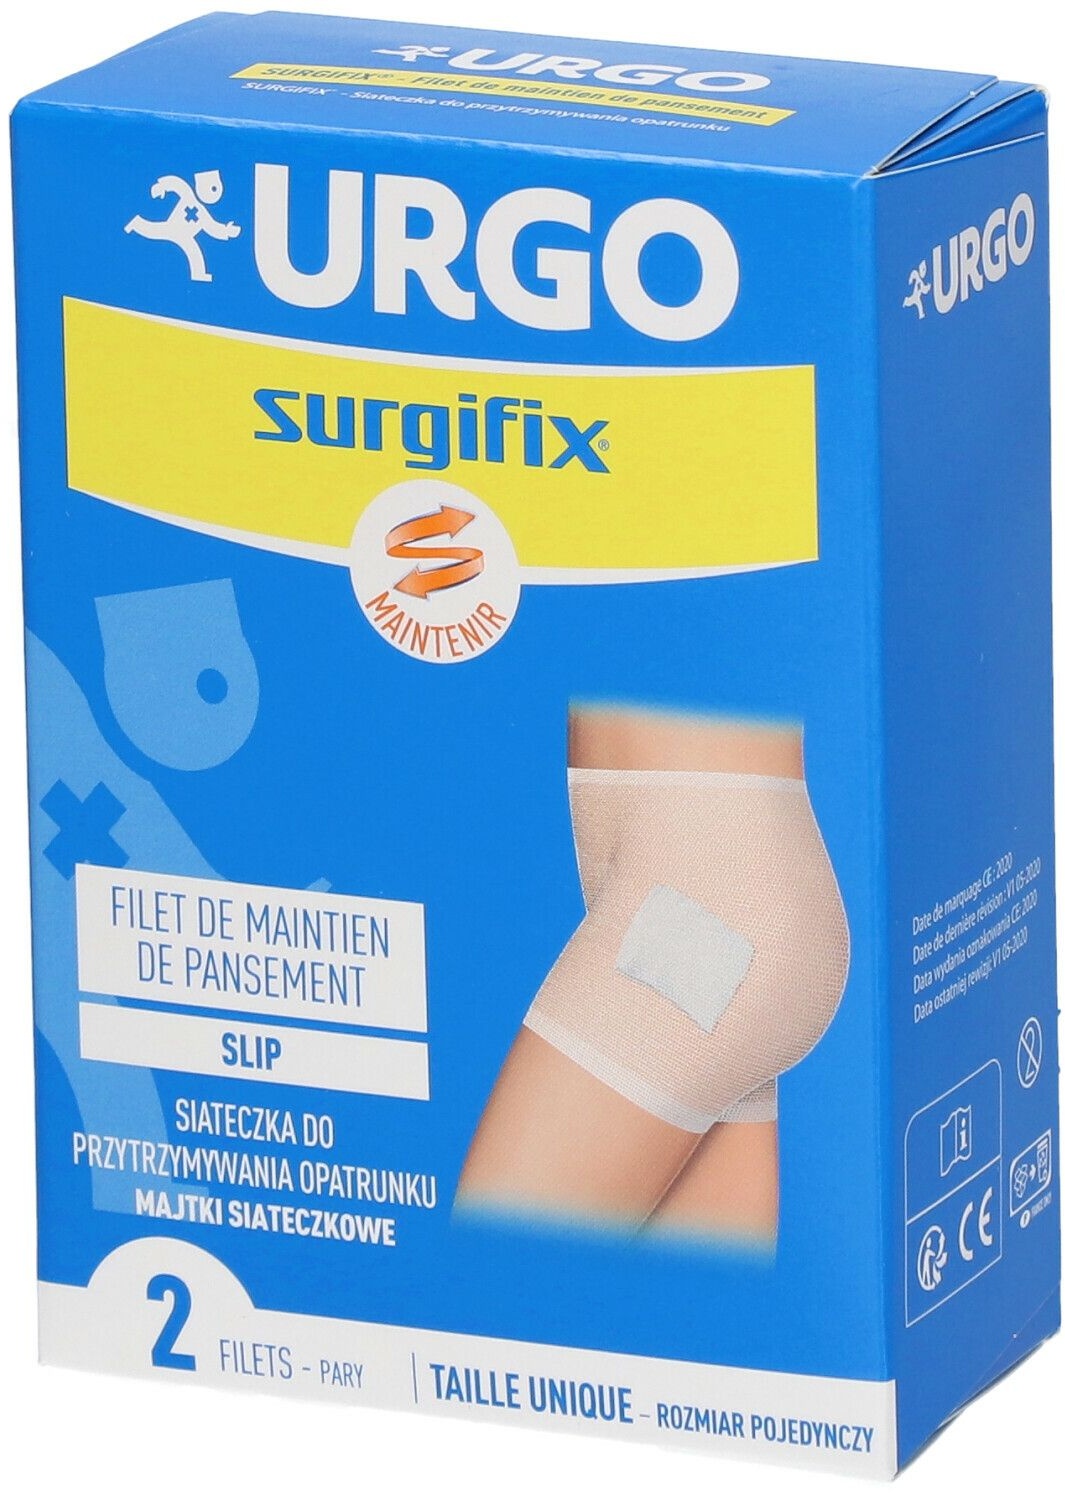 URGO Surgifix® Filet de Maintien de pansement Slip adultes 2 pc(s) bandage(s)